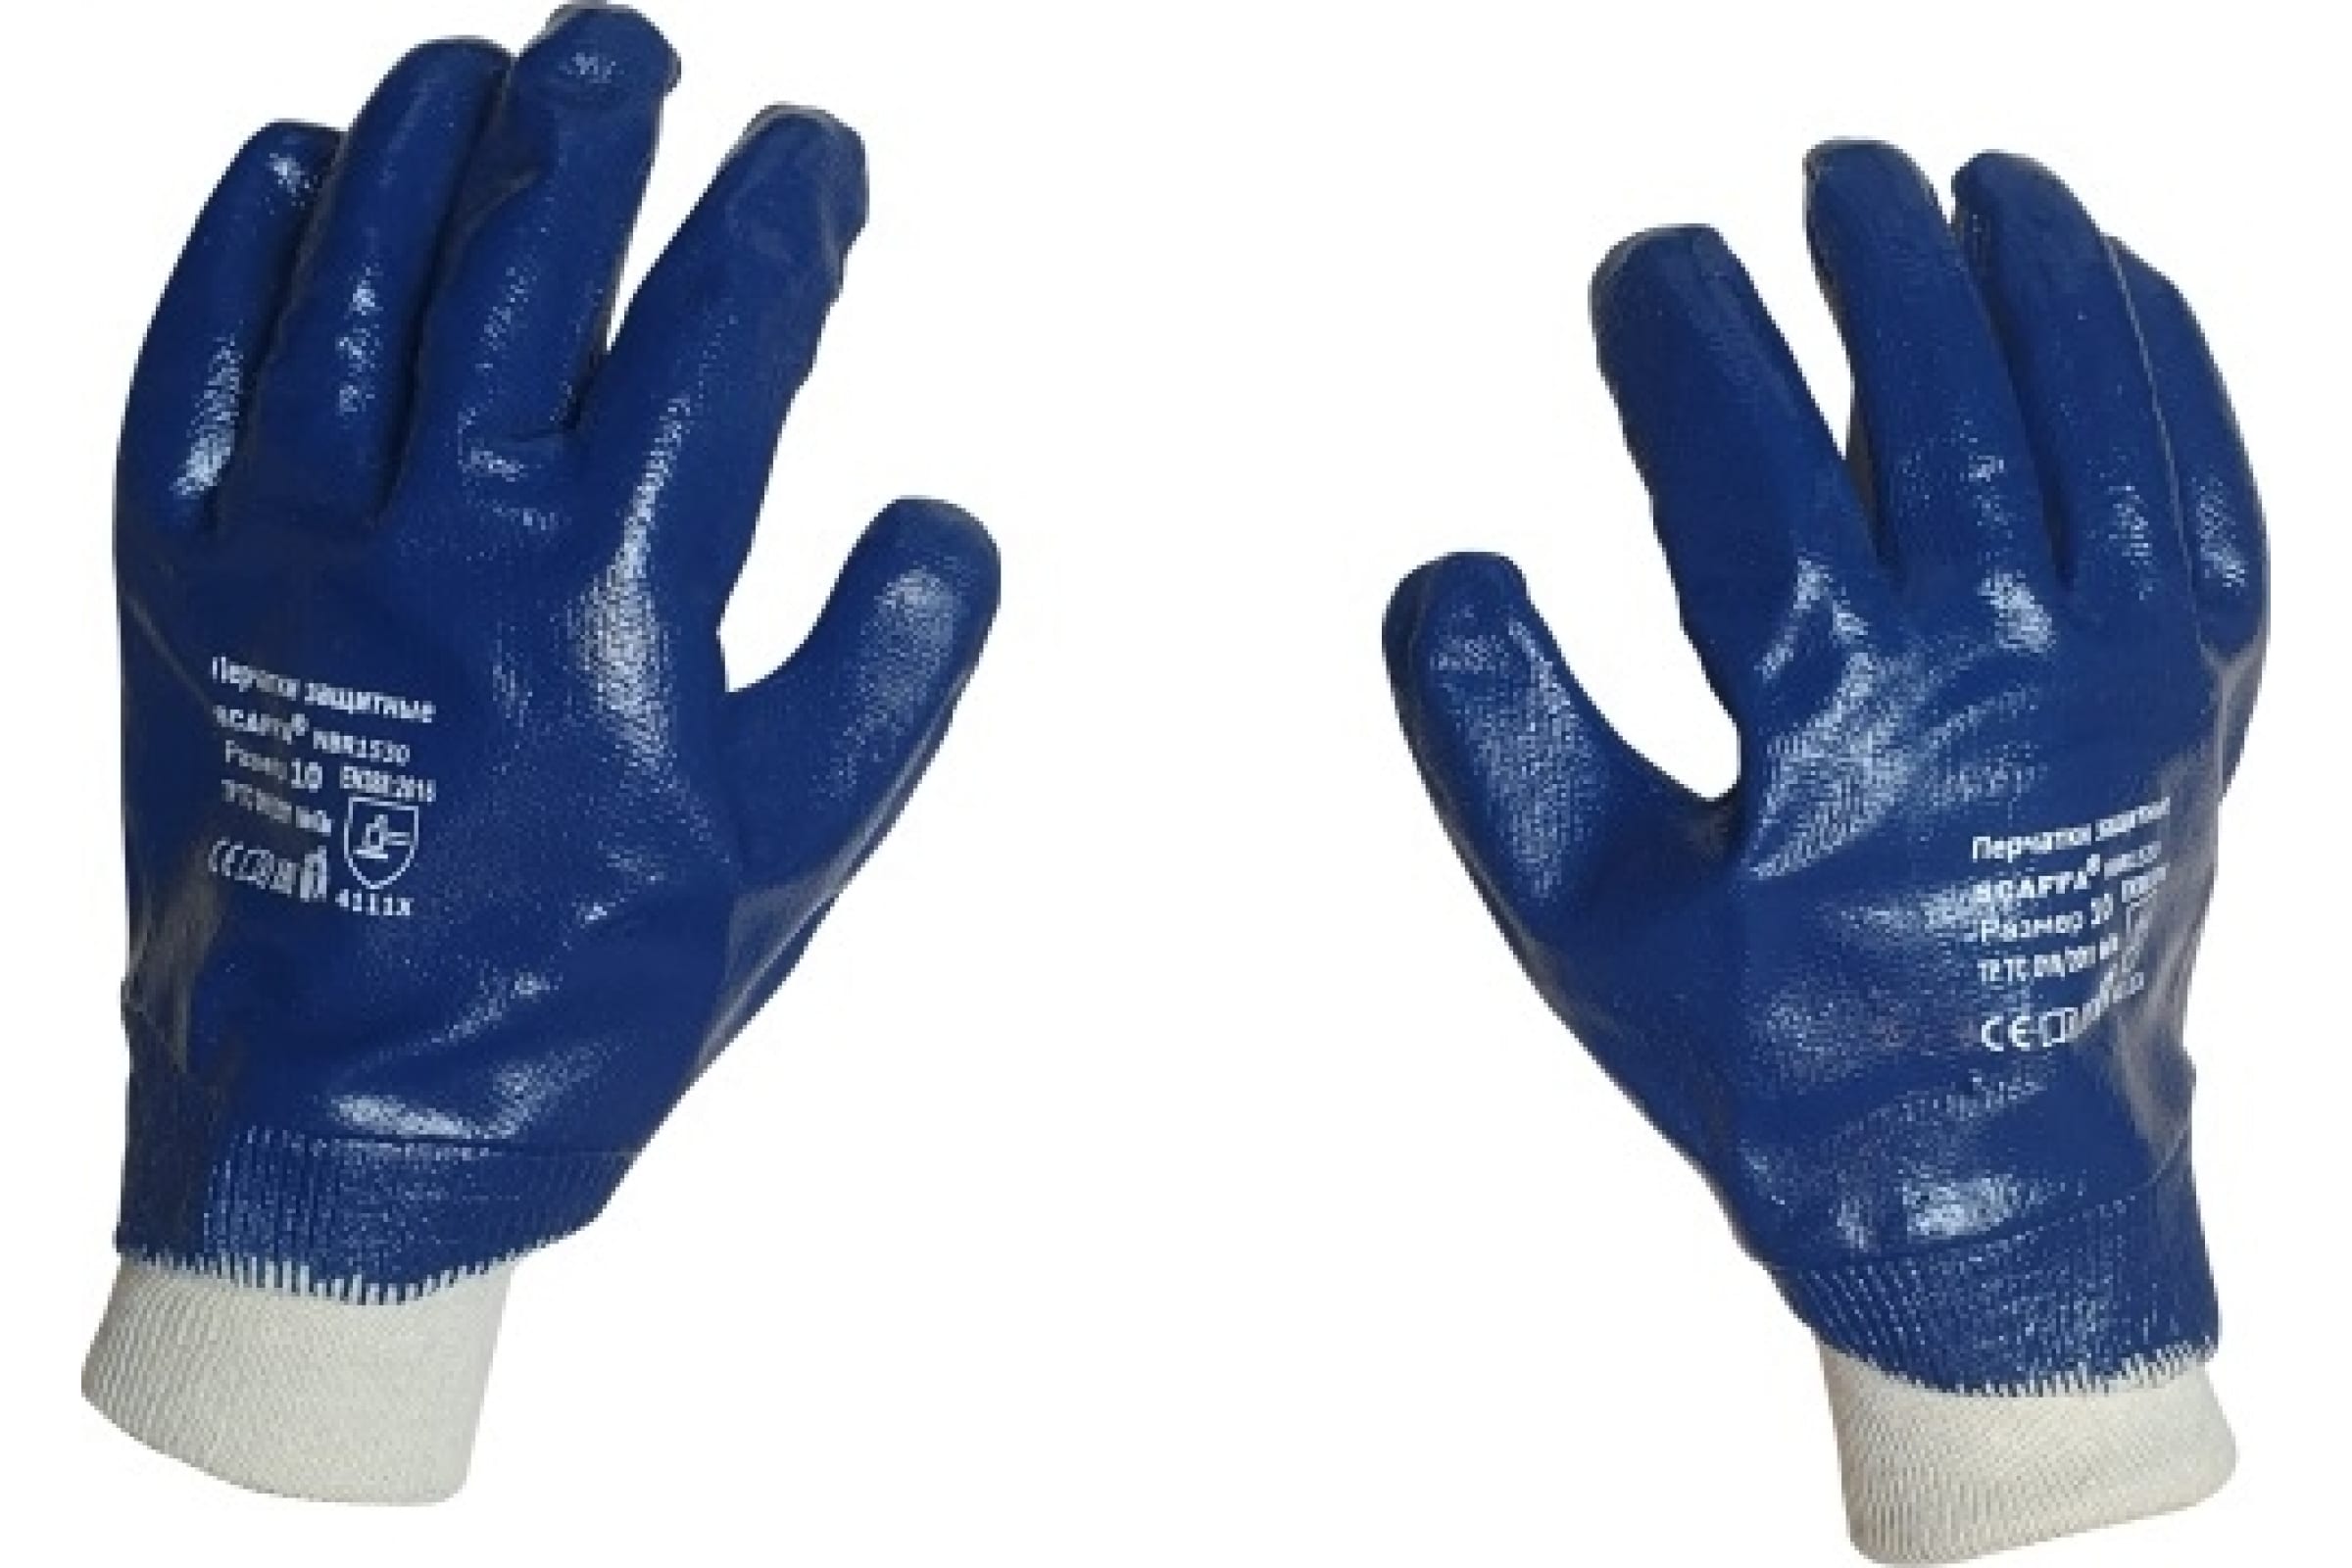 Scaffa перчатки с полным нитриловым обливом NBR1530 размер 10 00-00012457 перчатки нейлоновые с нитриловым полуобливом размер 8 микс greengo